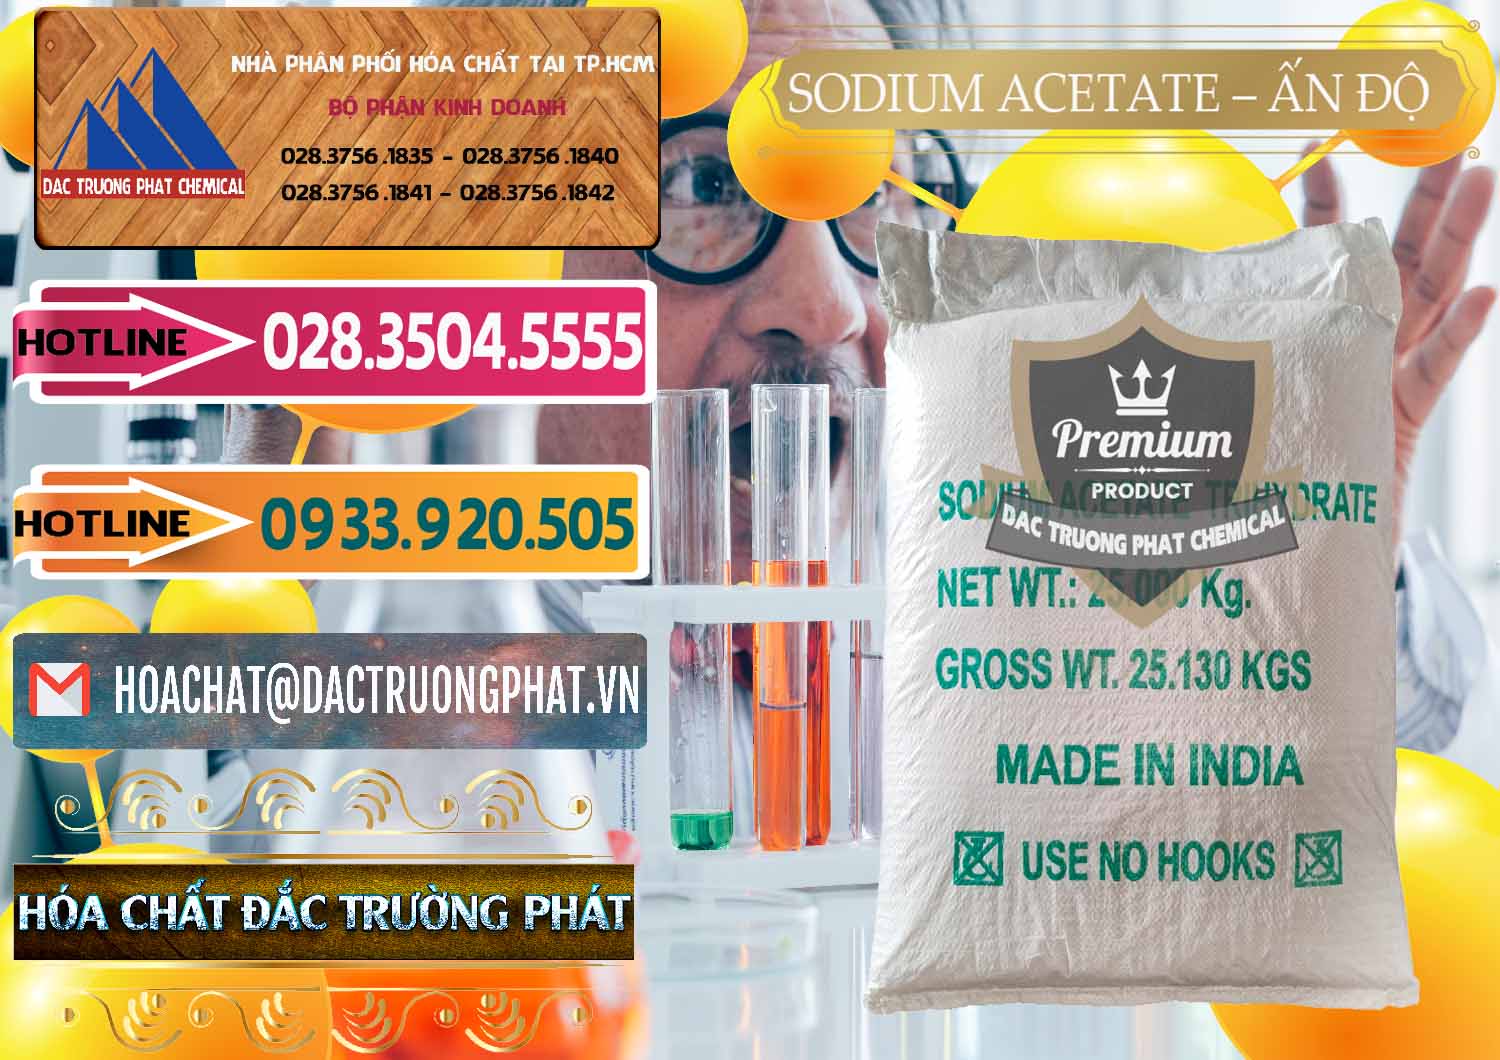 Cty chuyên cung ứng _ bán Sodium Acetate - Natri Acetate Ấn Độ India - 0133 - Nhà cung cấp _ nhập khẩu hóa chất tại TP.HCM - dactruongphat.vn